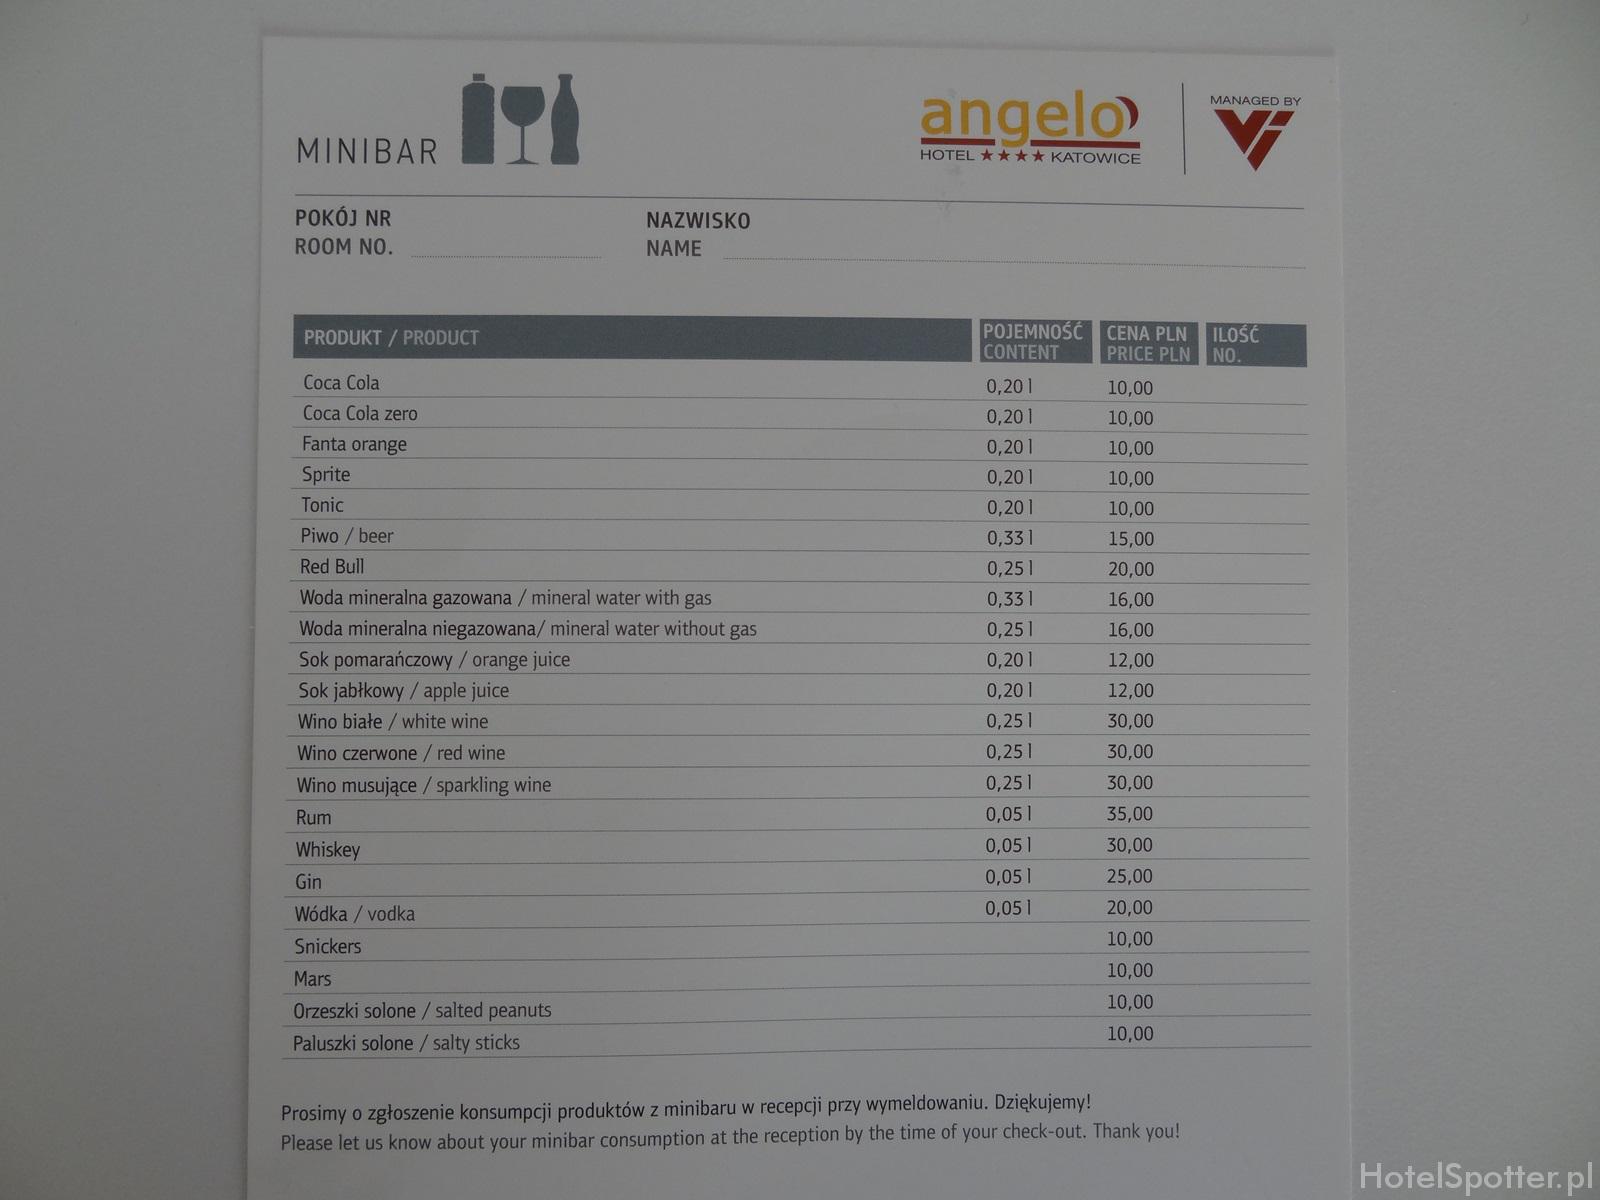 angelo Hotel Katowice - ceny minibarku